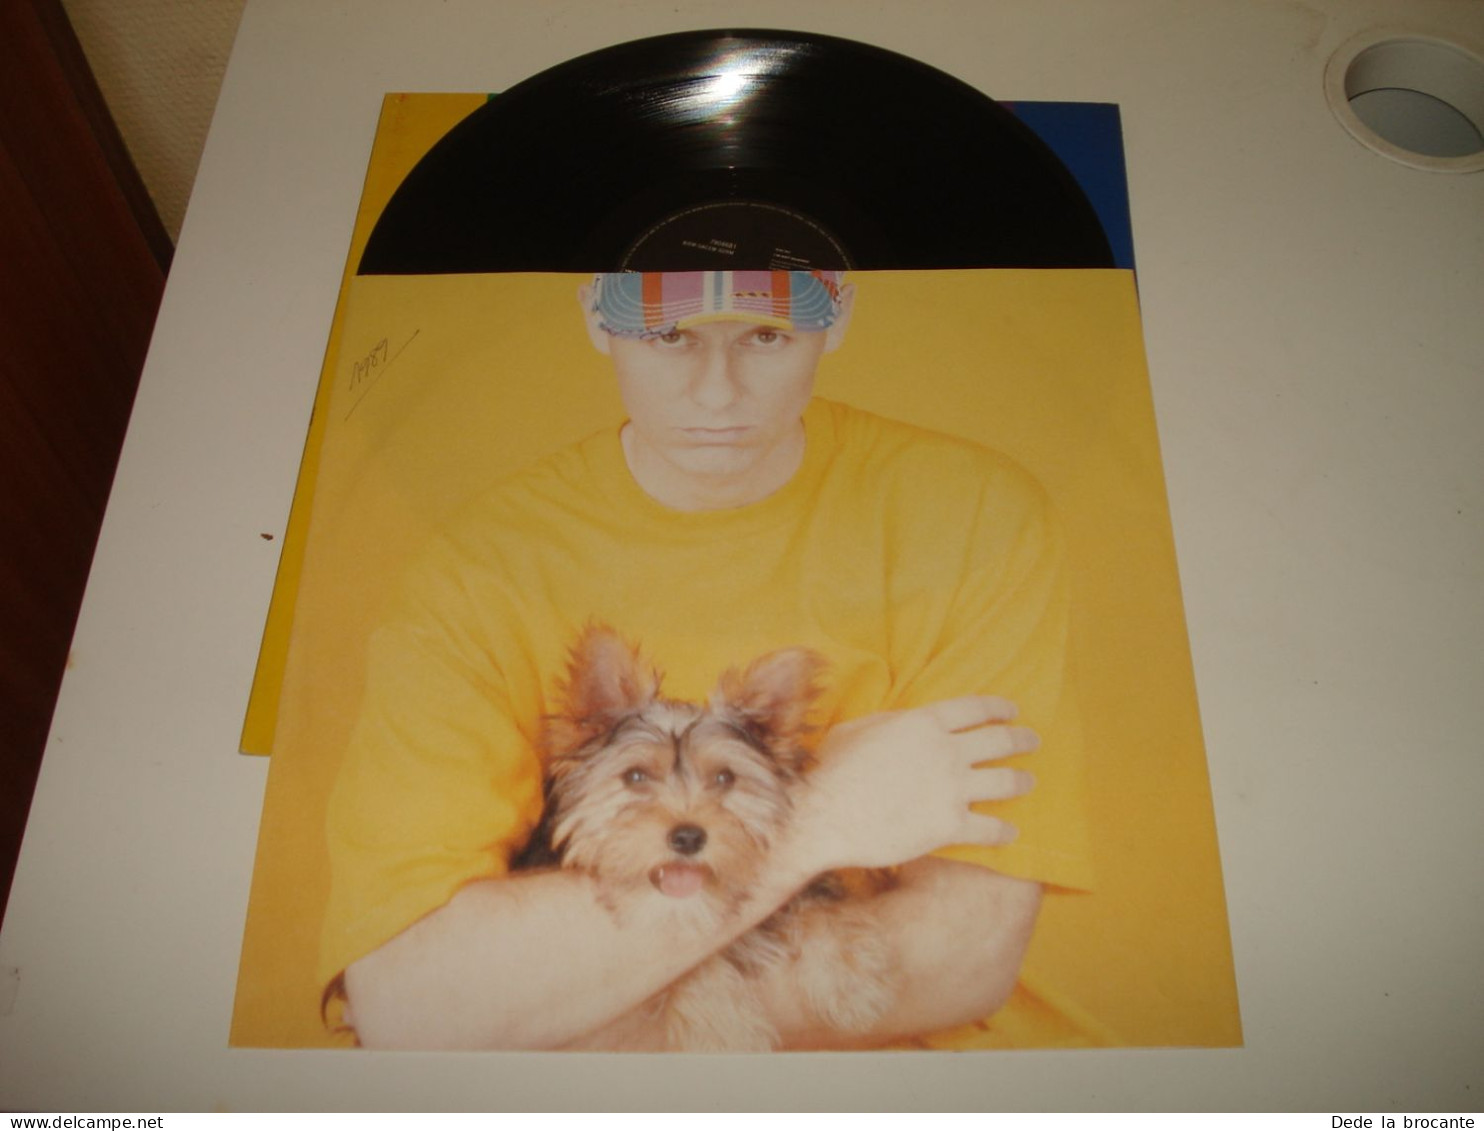 B12 / Pet Shop Boys – Introspective - LP – 064 7 90868 1 - Europe 1988   EX/N.M - Dance, Techno & House